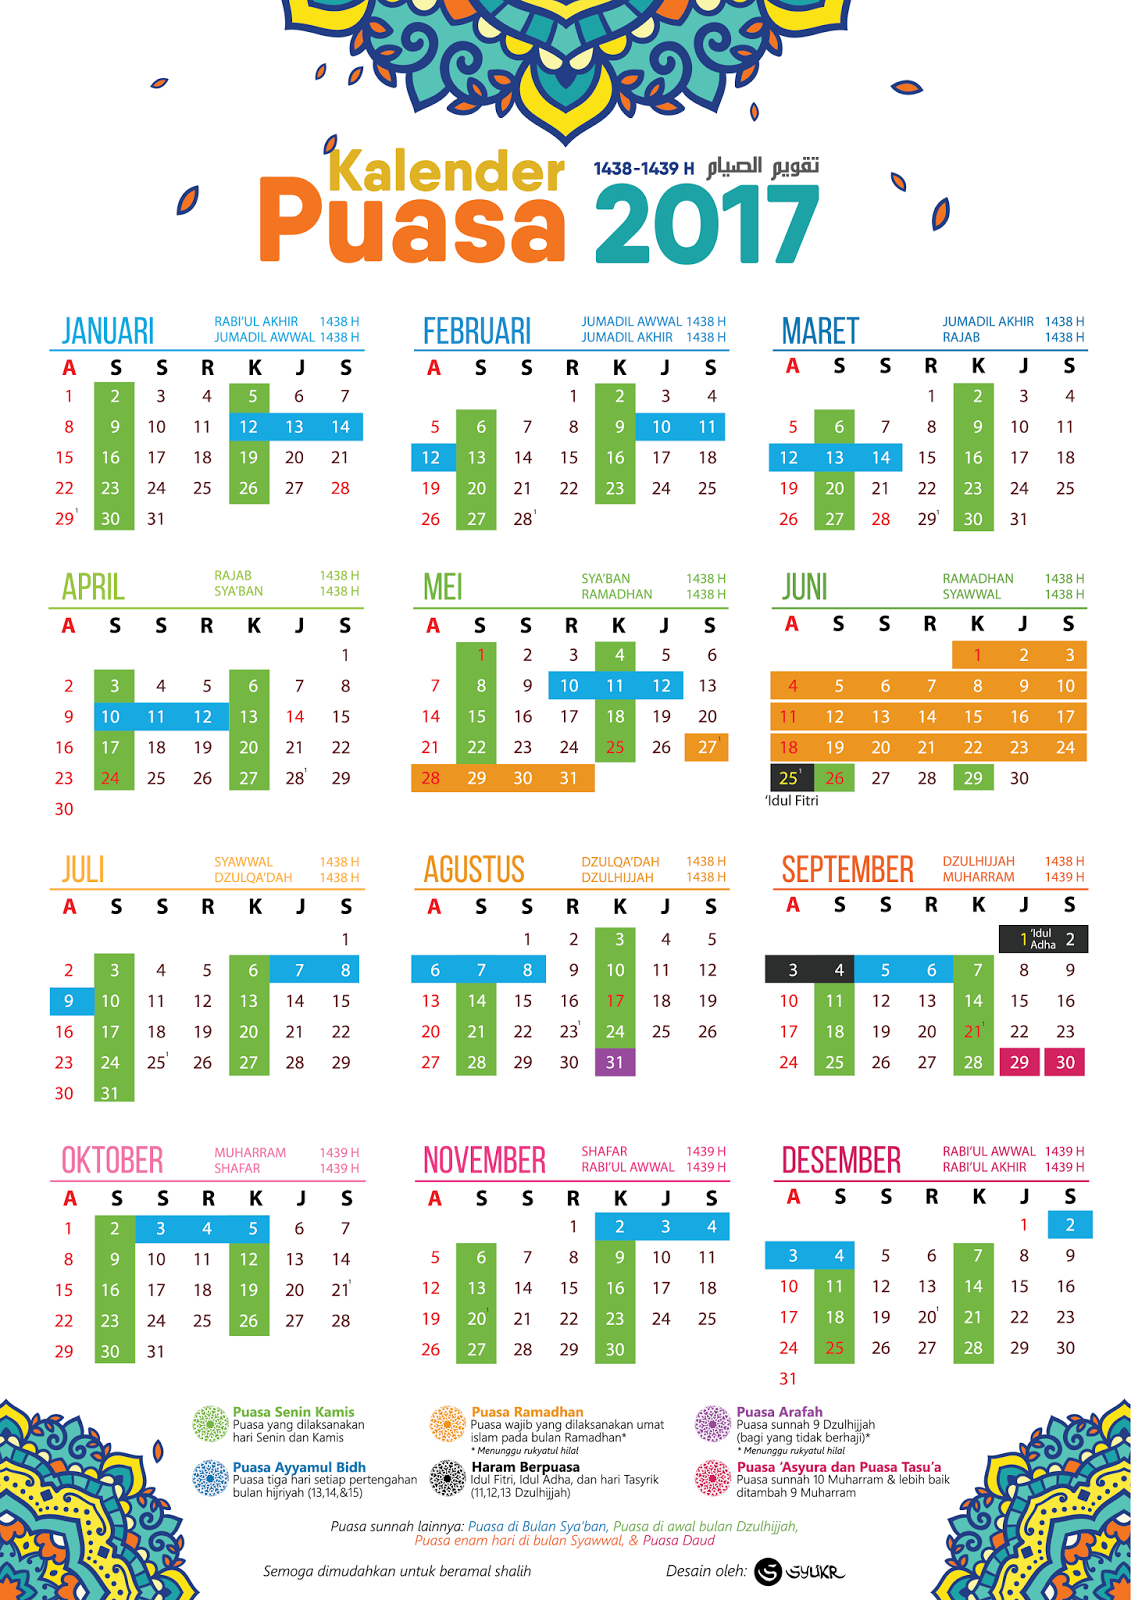 Kalendar Puasa Sunat Dan Wajib 2017